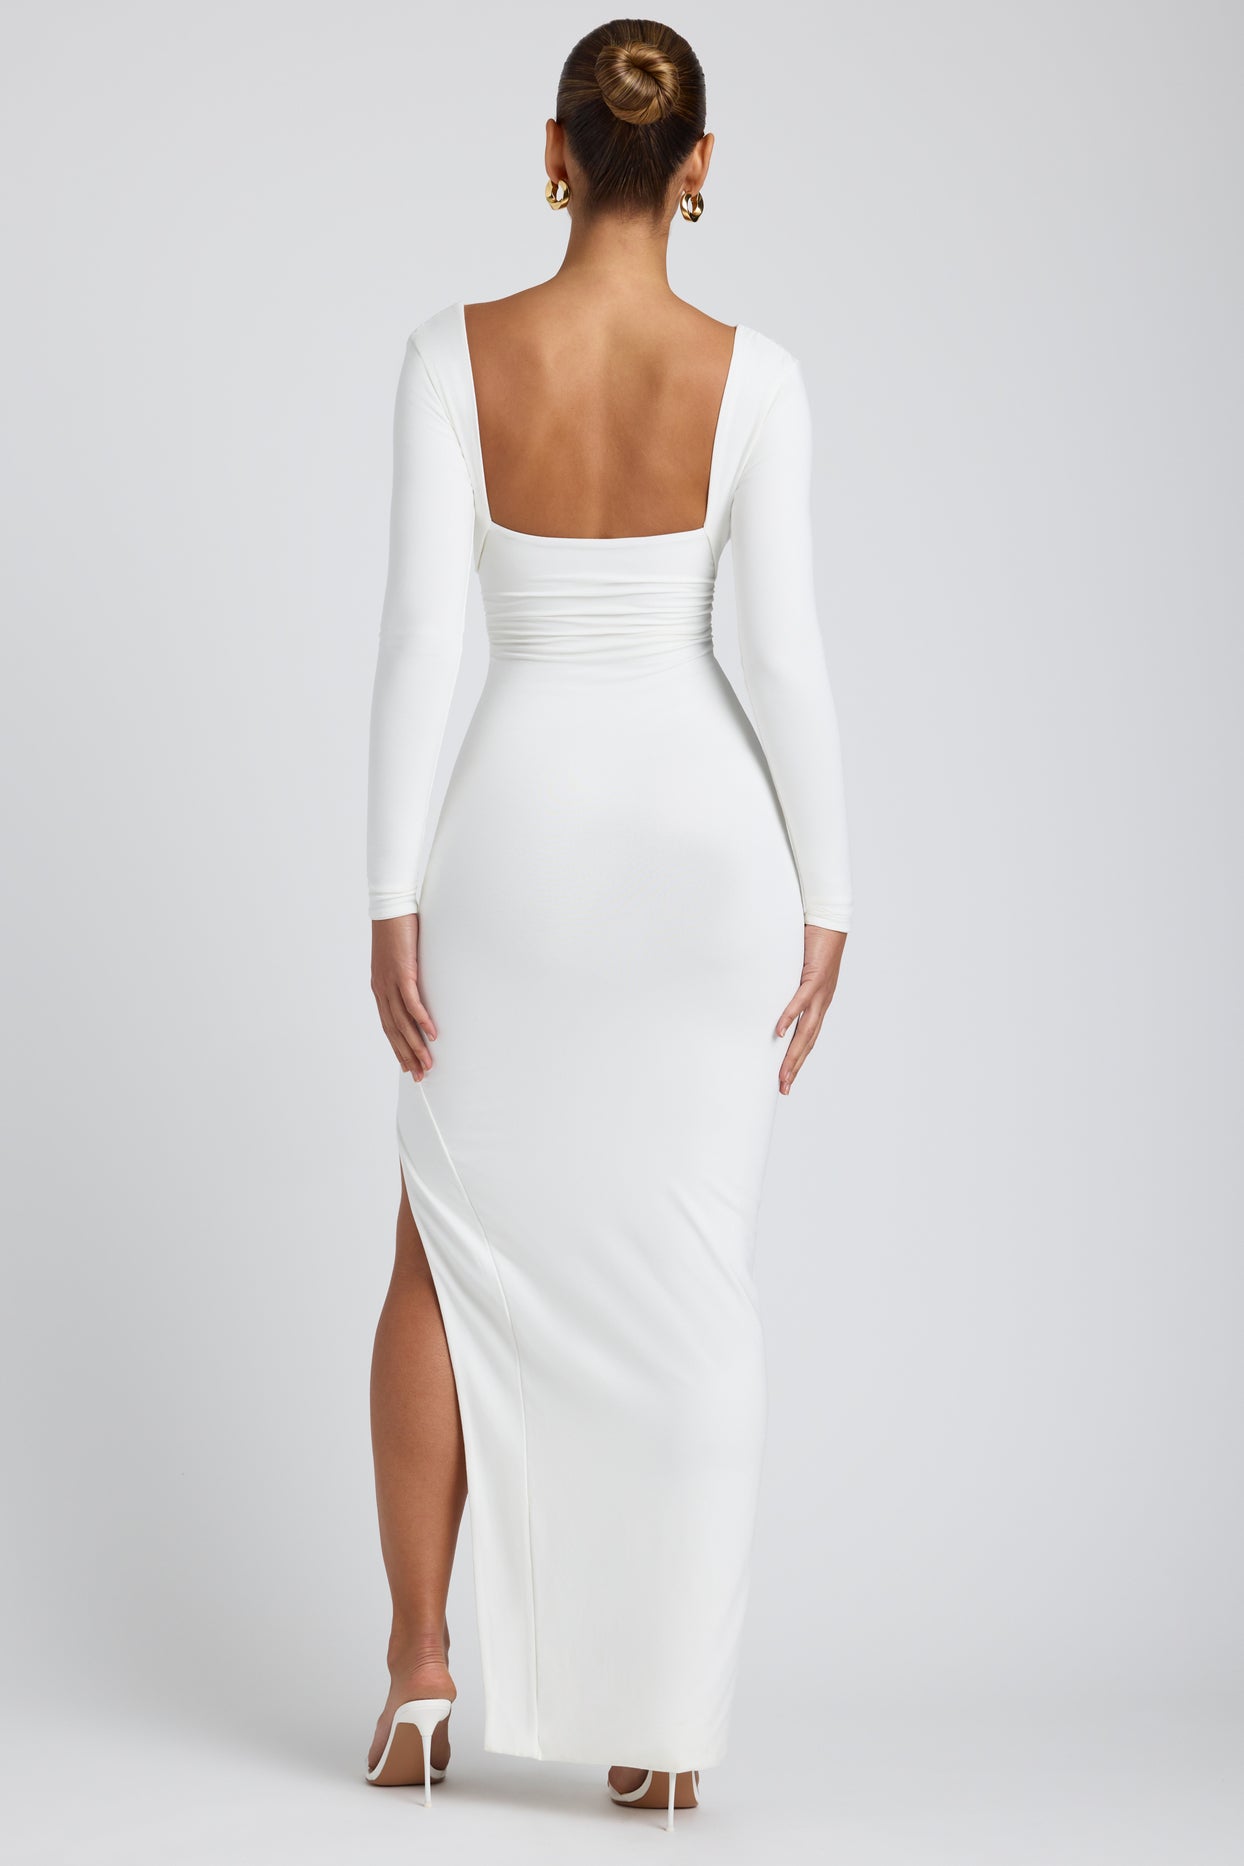 Modalna sukienka maxi z długim rękawem i głębokim dekoltem w kolorze białym